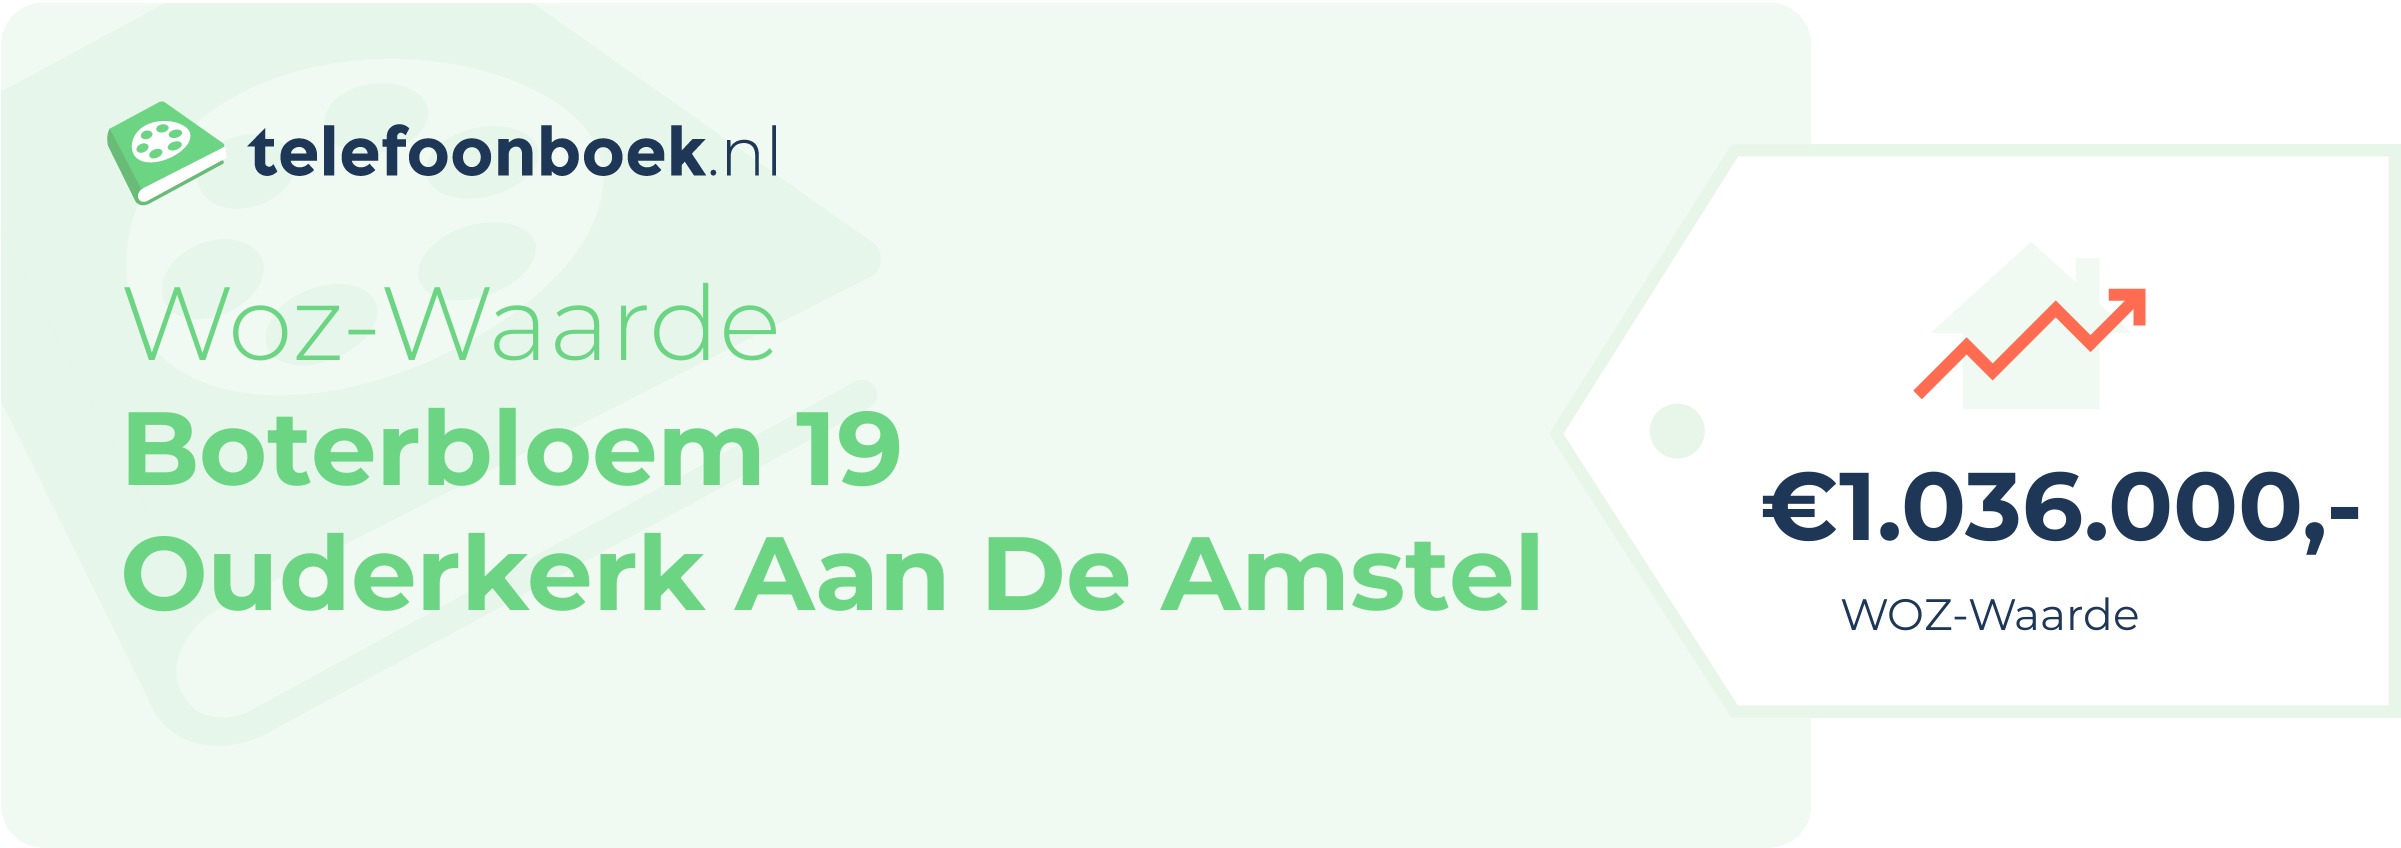 WOZ-waarde Boterbloem 19 Ouderkerk Aan De Amstel